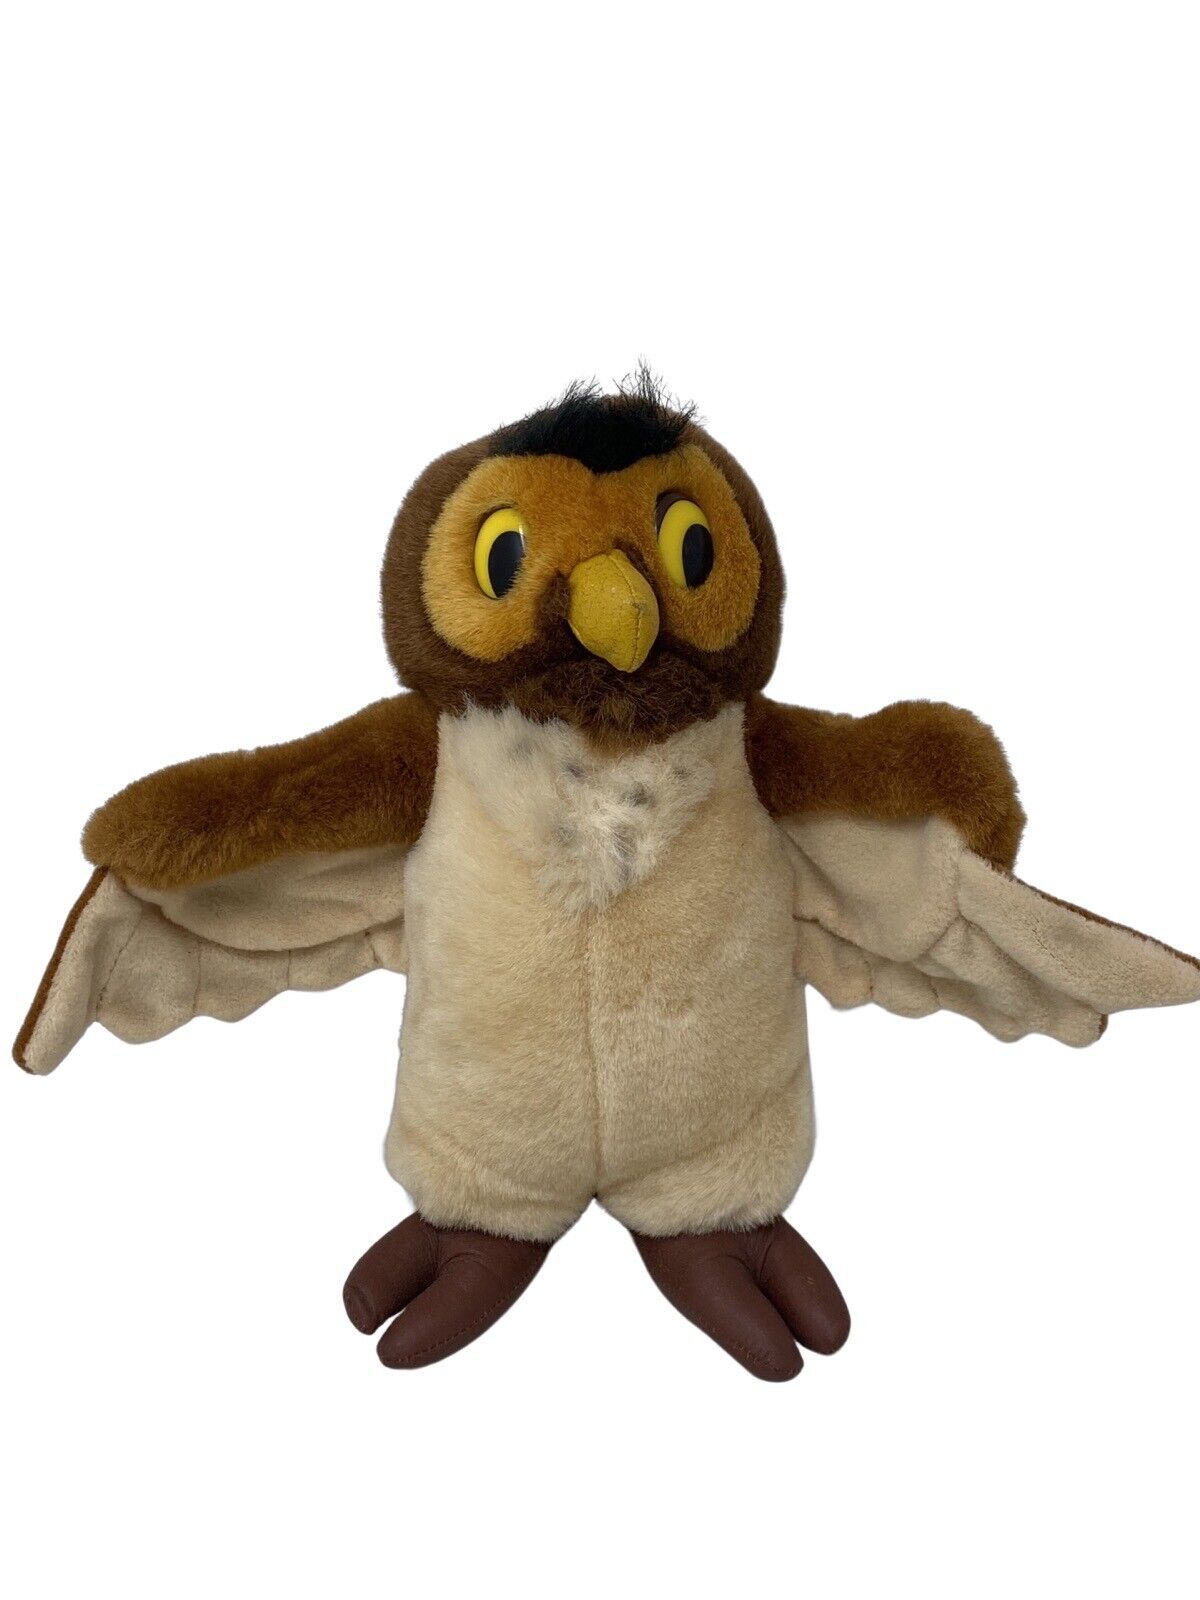 Vintage [1990s] Collectible Disney Store Owl Plush, Faux Leather Feet/Beak